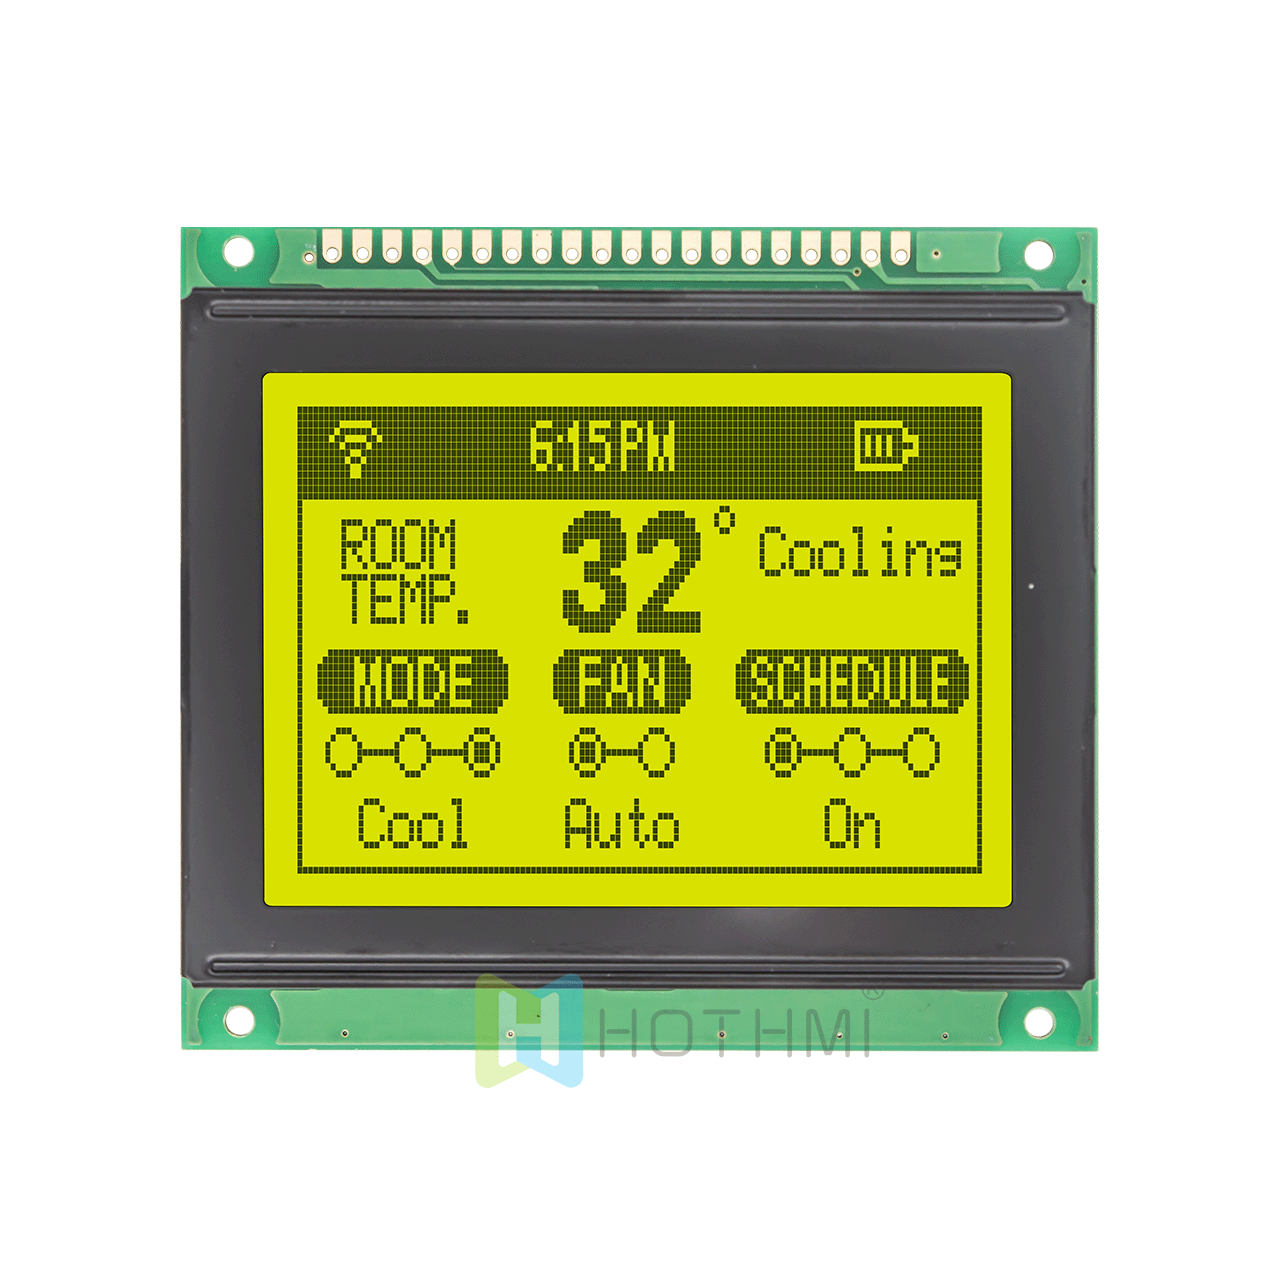 3“ 黄绿色图形液晶显示器/128x64 图形 LCD 显示模块 / 适用于 Arduino /KS0108或兼容